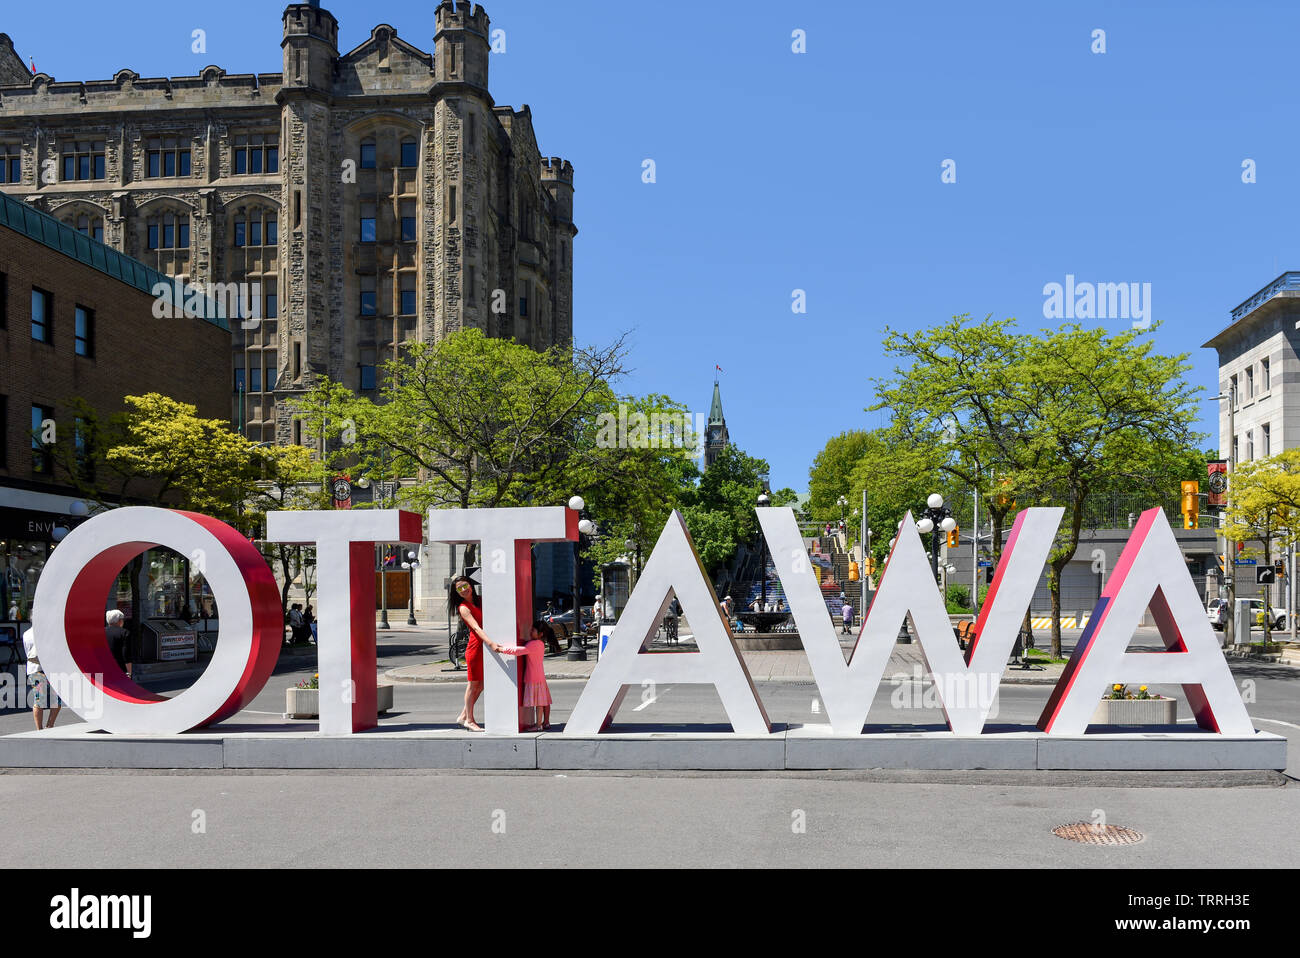 Ottawa, Kanada - Juni 8, 2019: Die riesigen Ottawa unterzeichnen in der Byward Market ist eine Attraktion für Menschen, die mit dem Zeichen darstellen möchten. Stockfoto